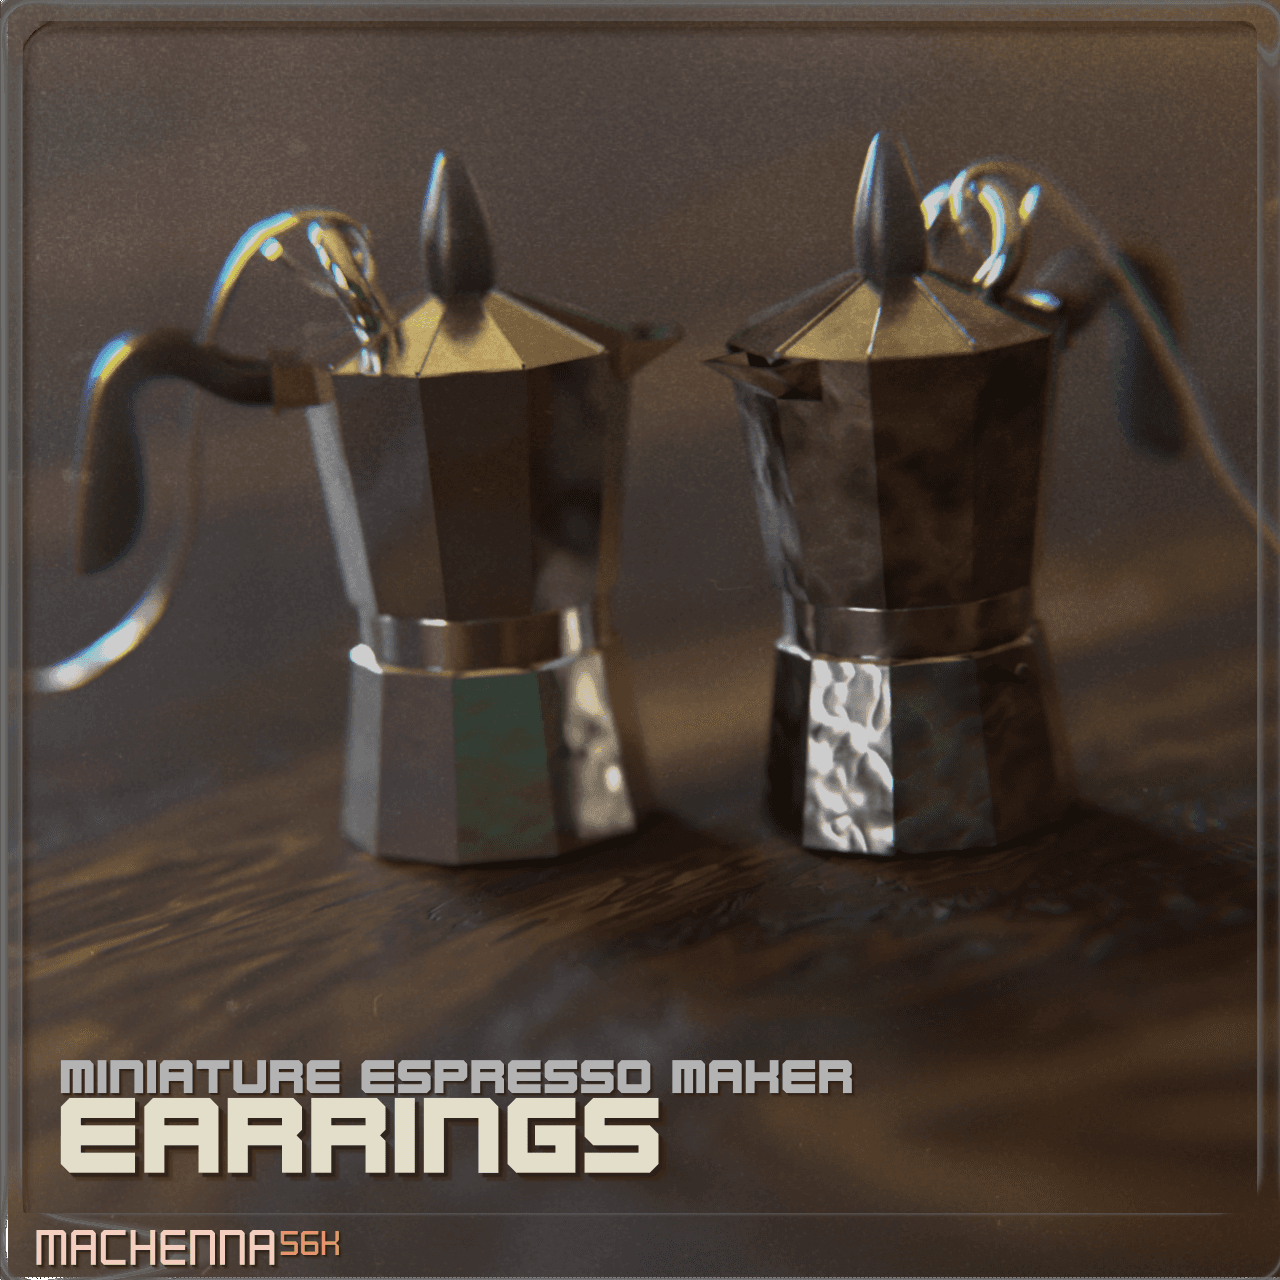 Miniature Espresso Maker Earrings 3d model